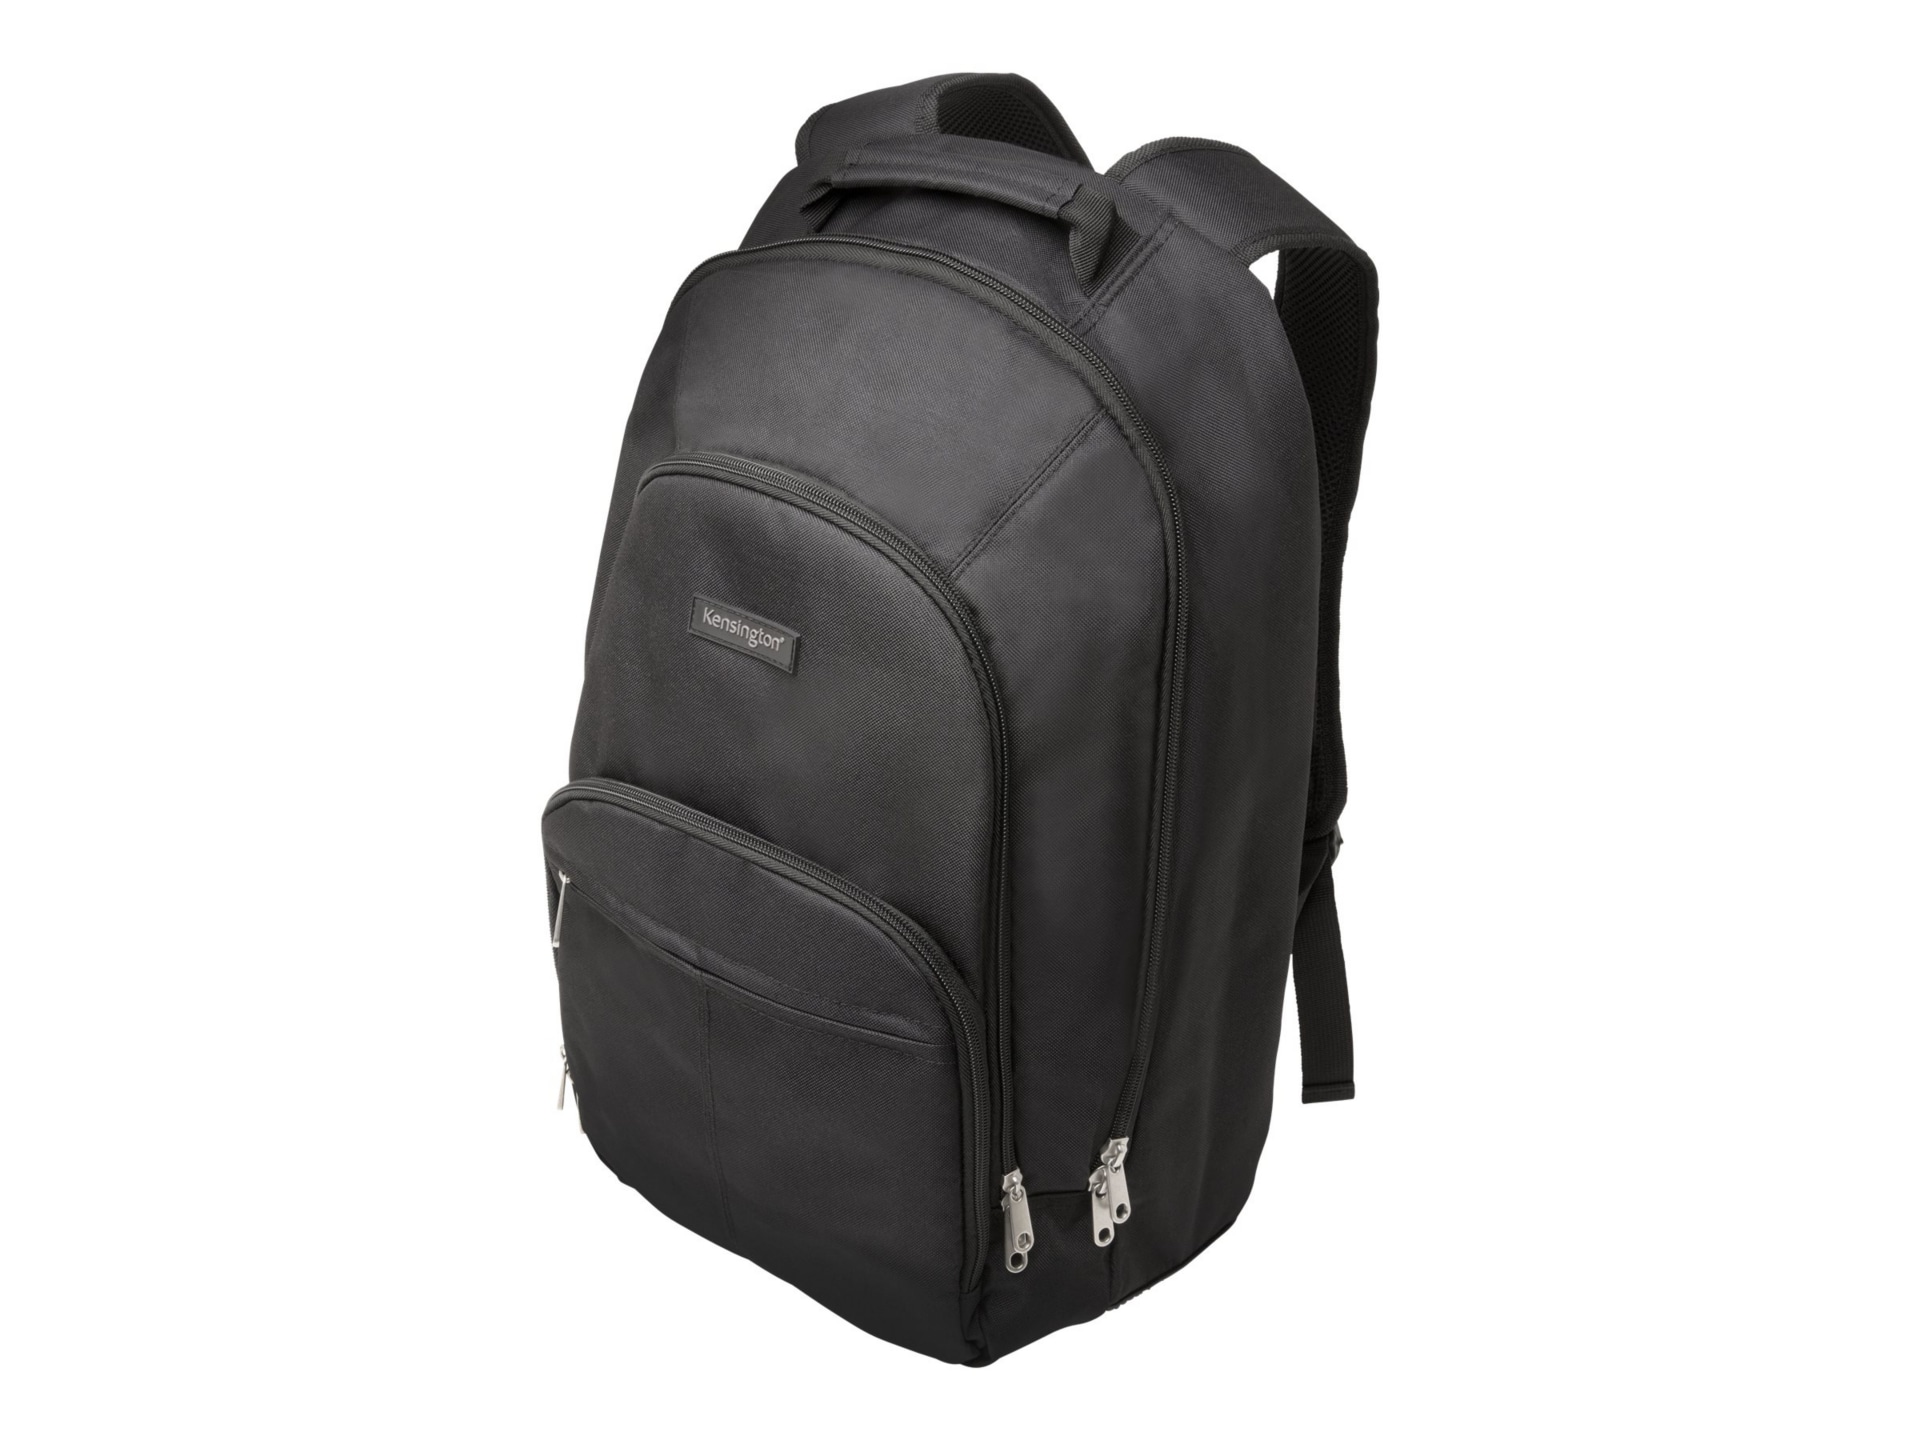 Kensington SP25 15.6" Laptop Backpack - sac à dos pour ordinateur portable